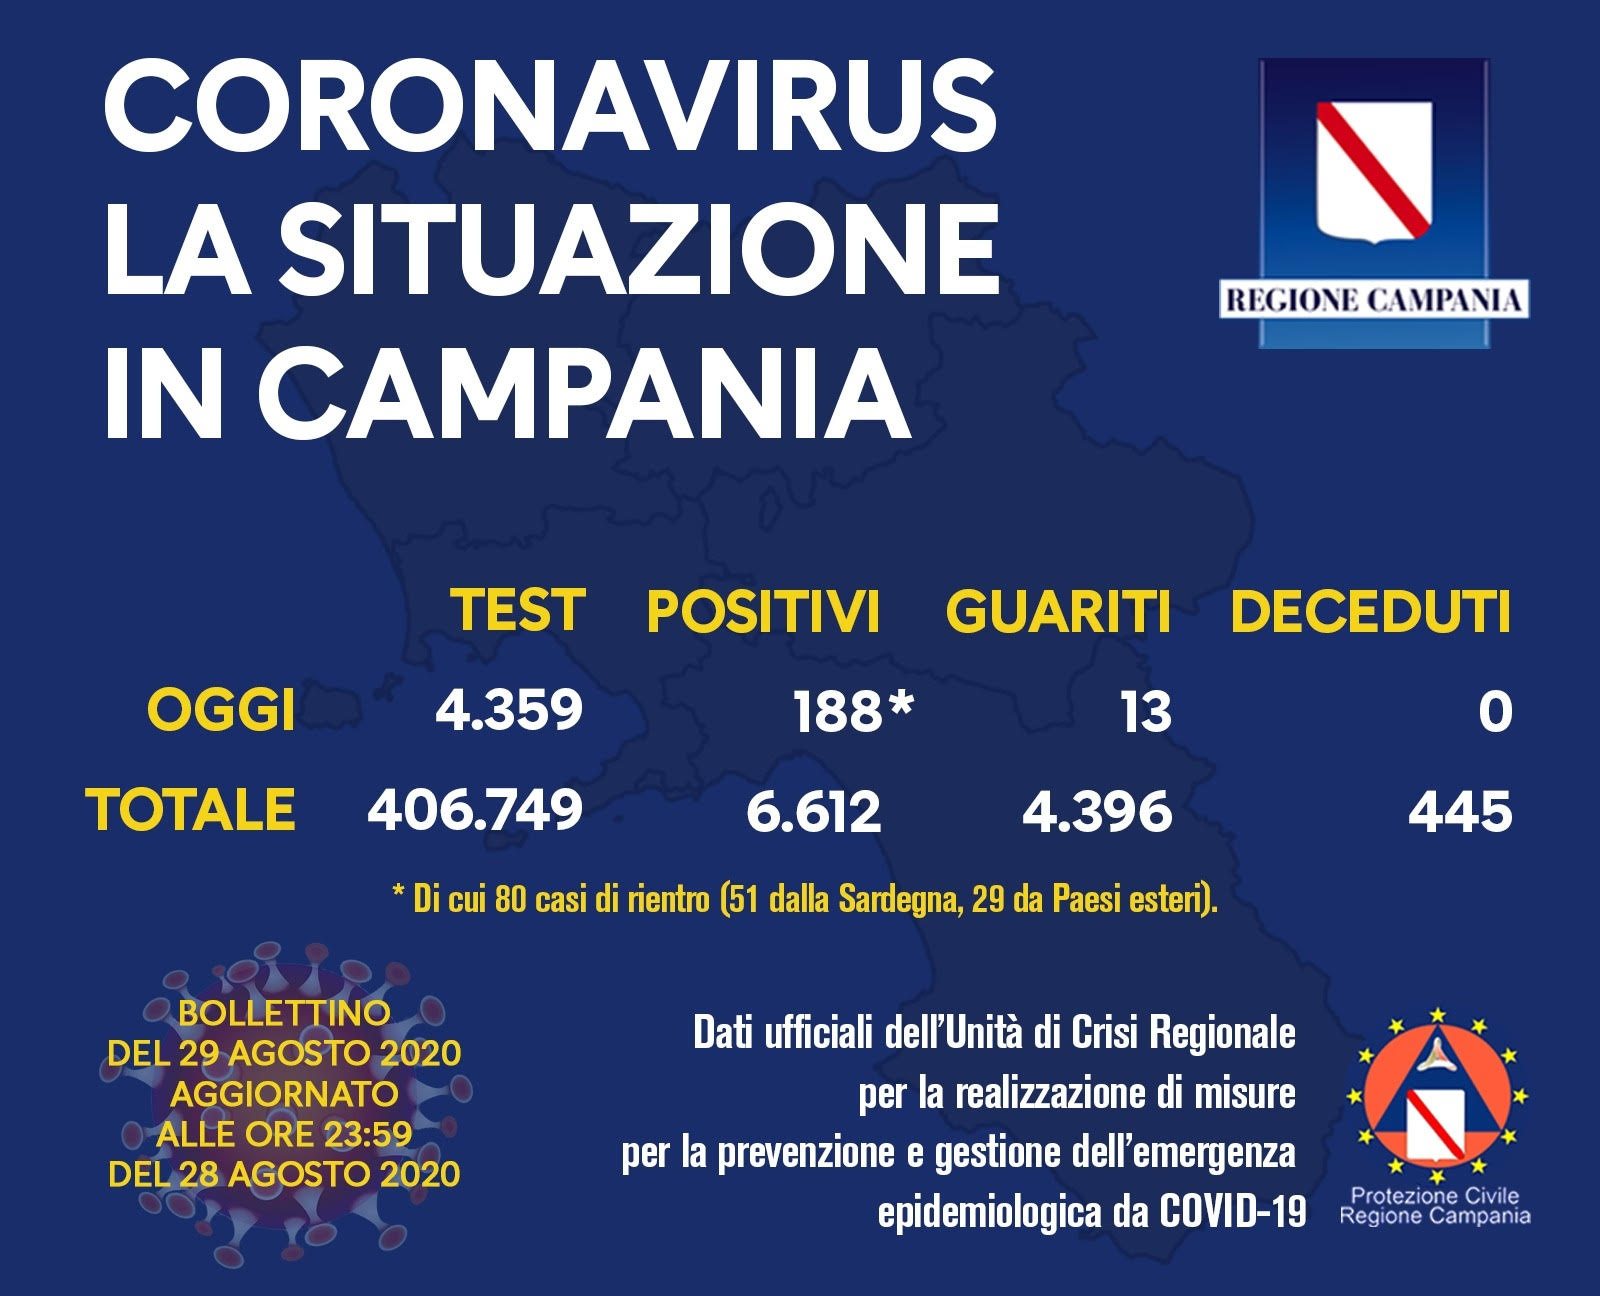 Covid-19: in Campania 188 nuovi positivi, 80 i casi di rientro